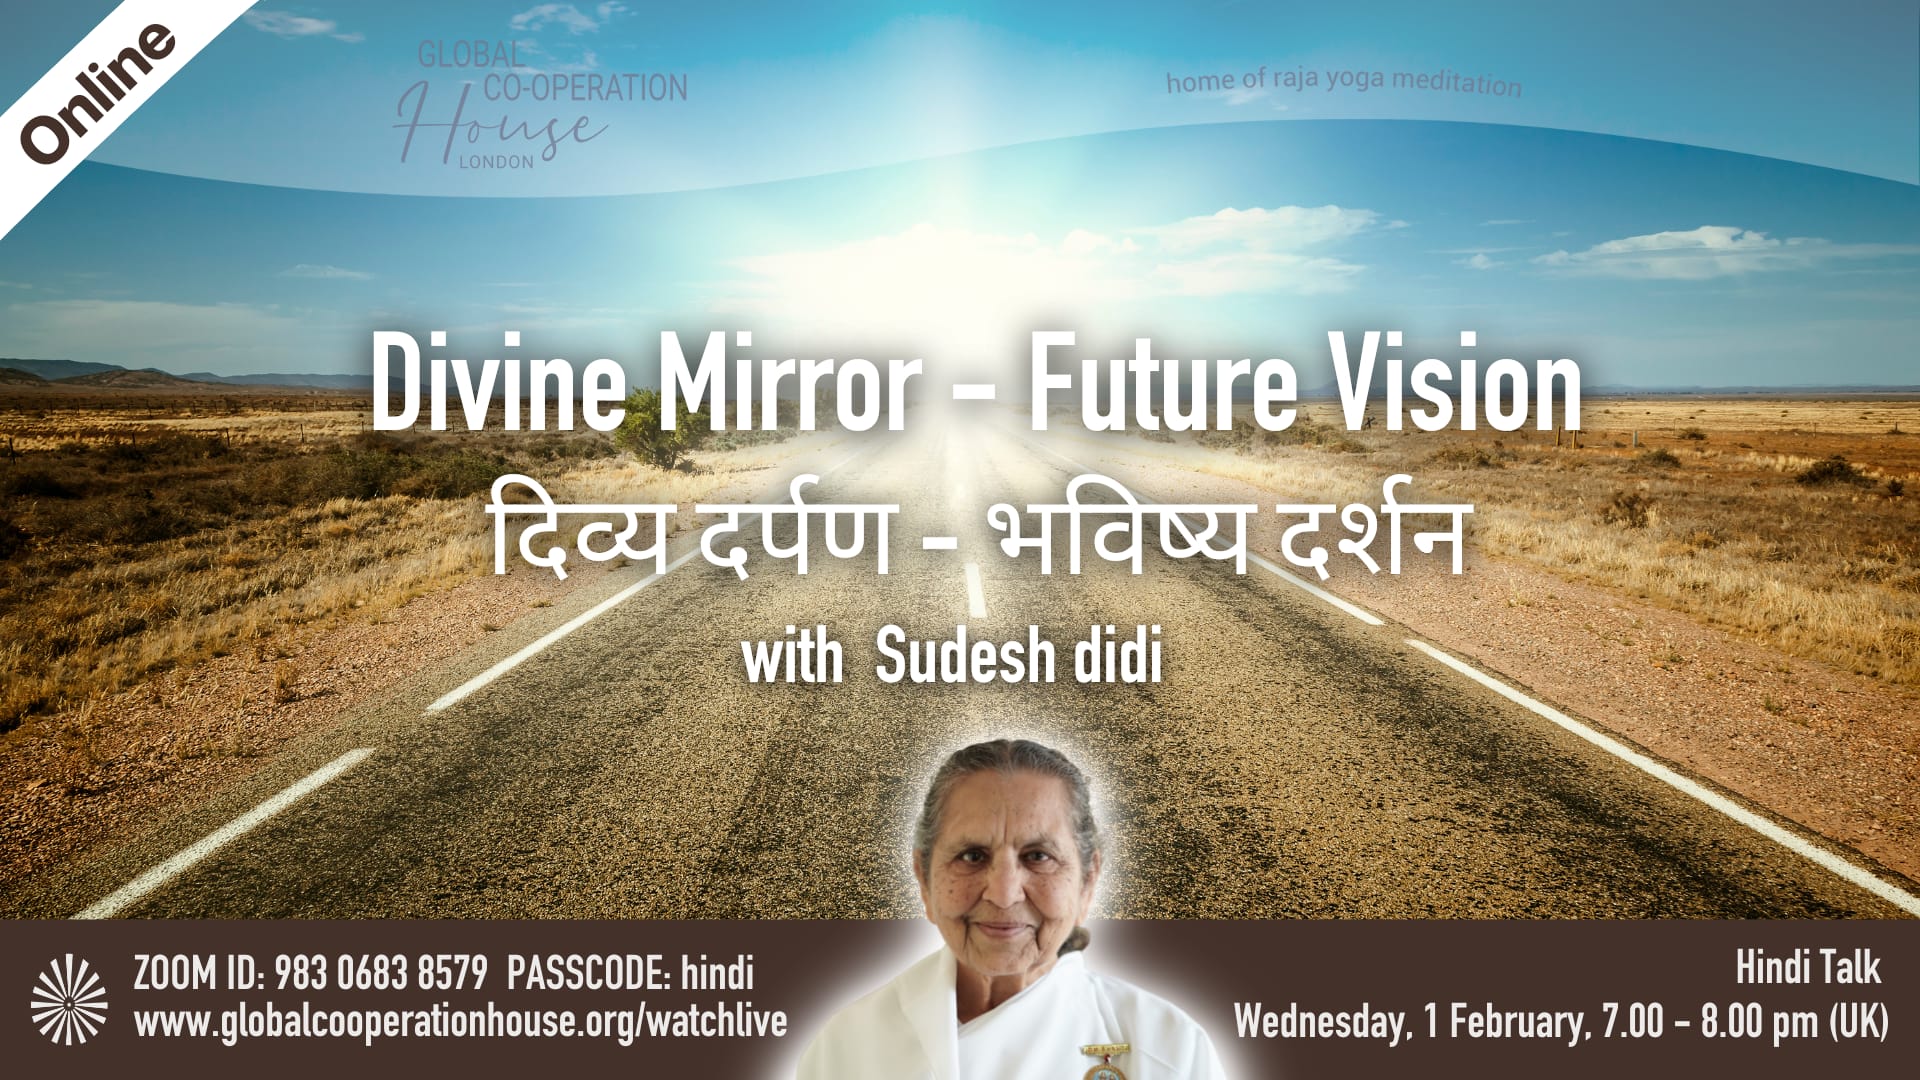 दिव्य दर्पण - भविष्य दर्शन : Divine Mirror - Future Vision